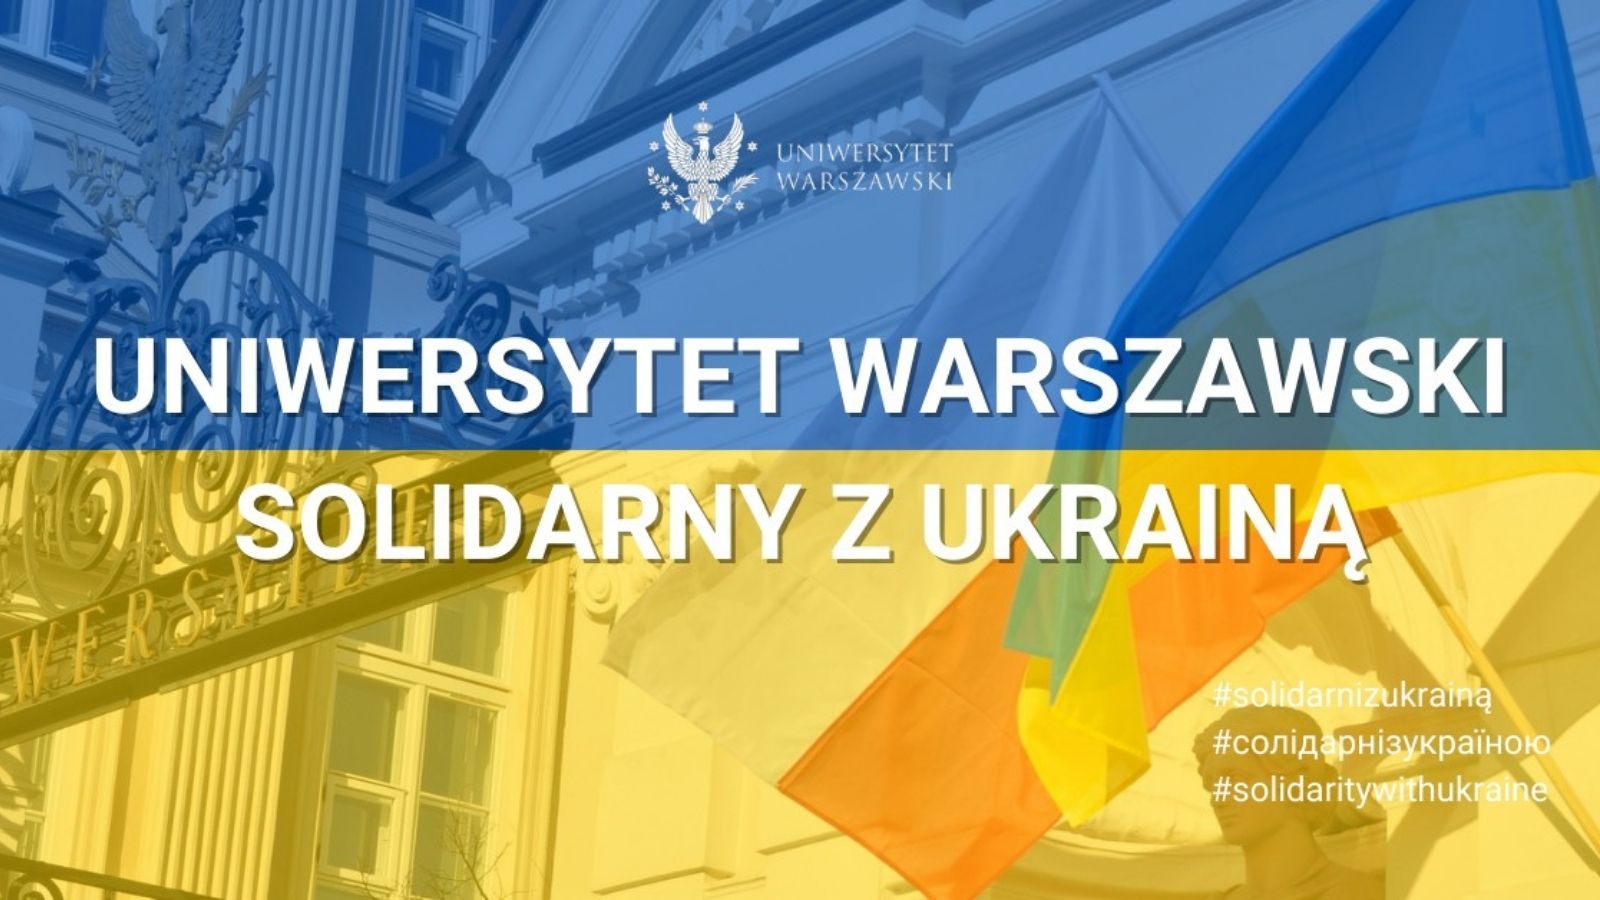 Uniwersytet Warszawski solidarny z Ukrainą | Варшавський університет солідарний з Україною